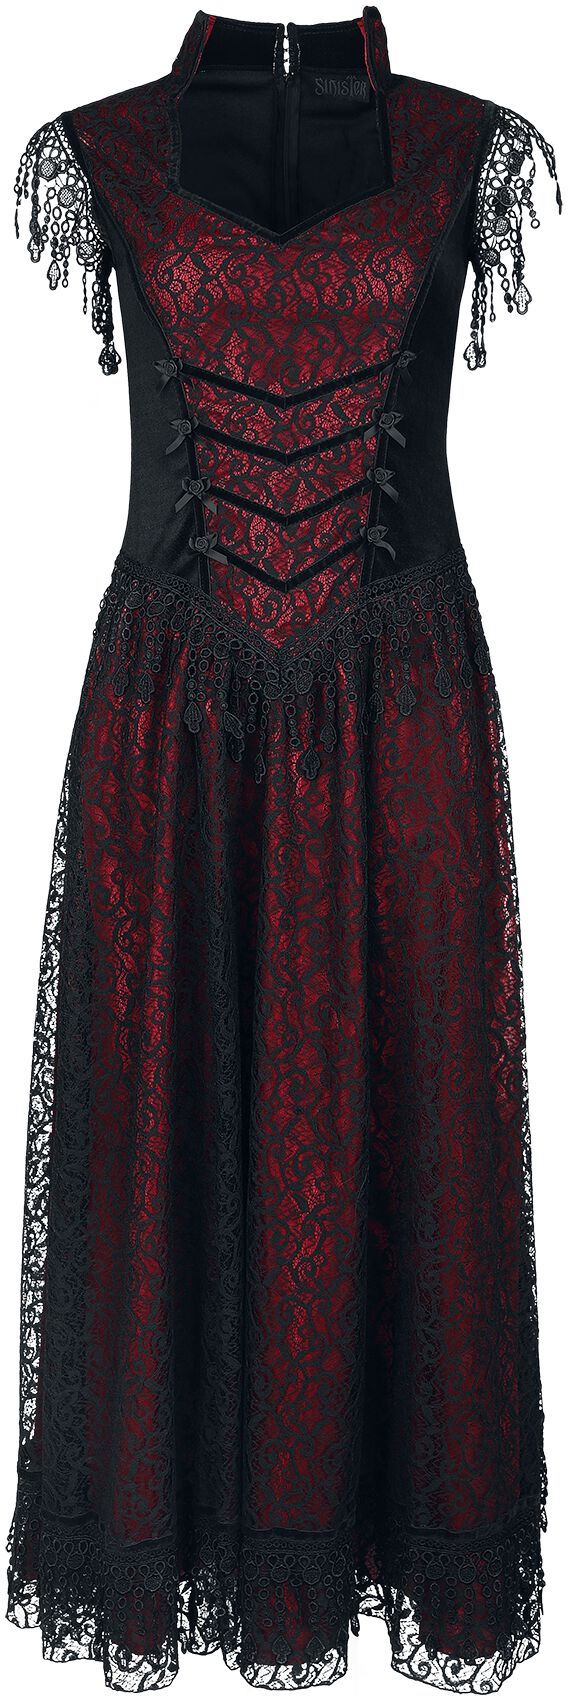 Sinister Gothic - Mittelalter Kleid lang - Gothic Dress - S bis XXL - für Damen - Größe XXL - schwarz/rot